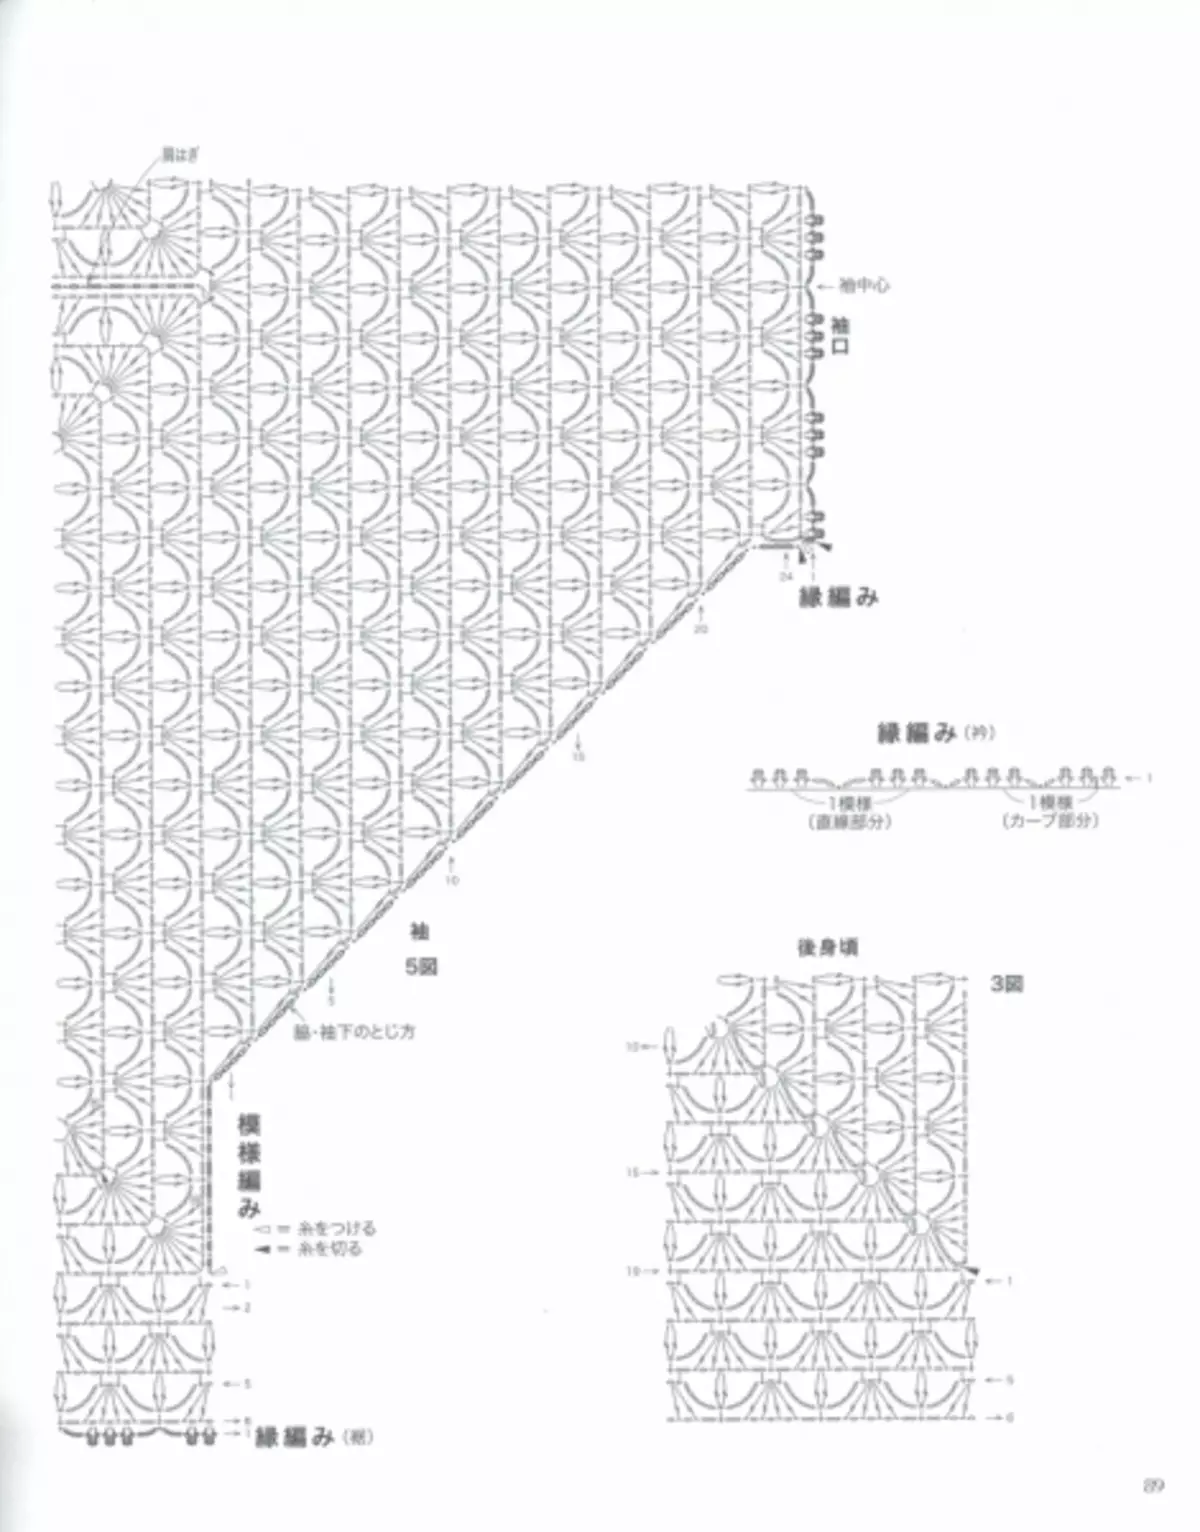 Японскі часопіс «Lets knit series 80554». зіма